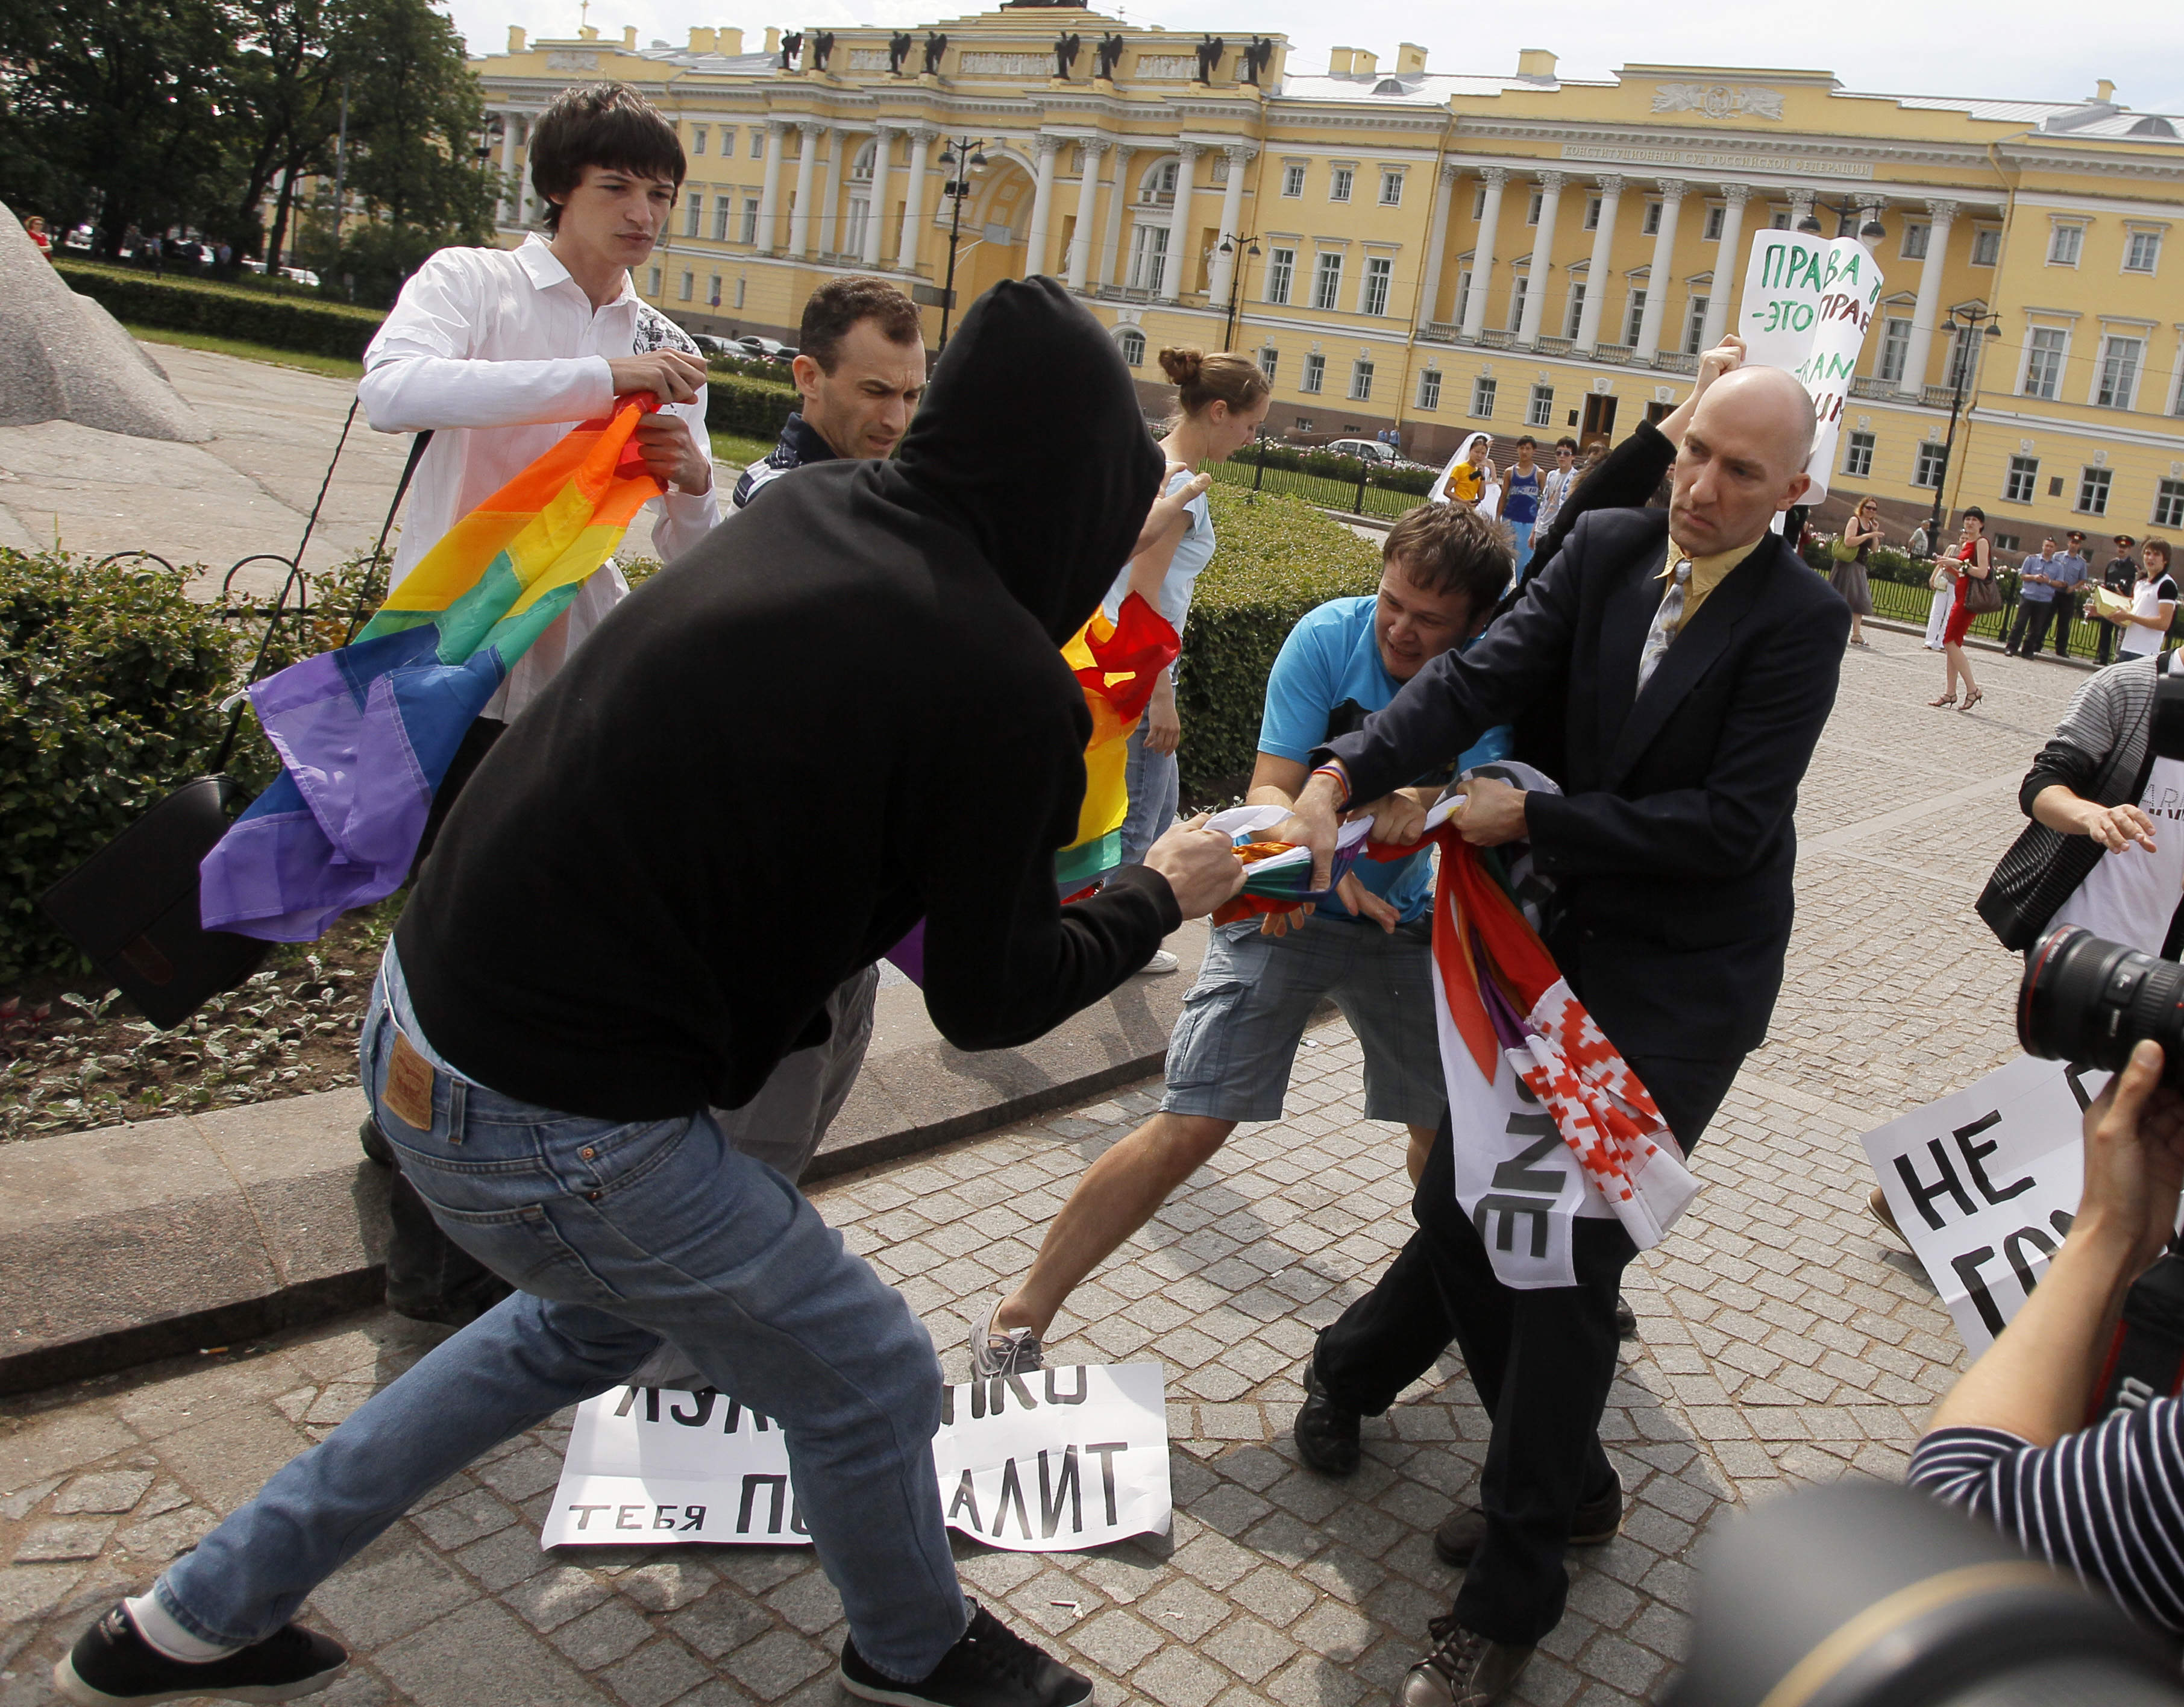 Ryska demonstranter har tidigare protesterat mot lagförslaget som först kom upp i november.